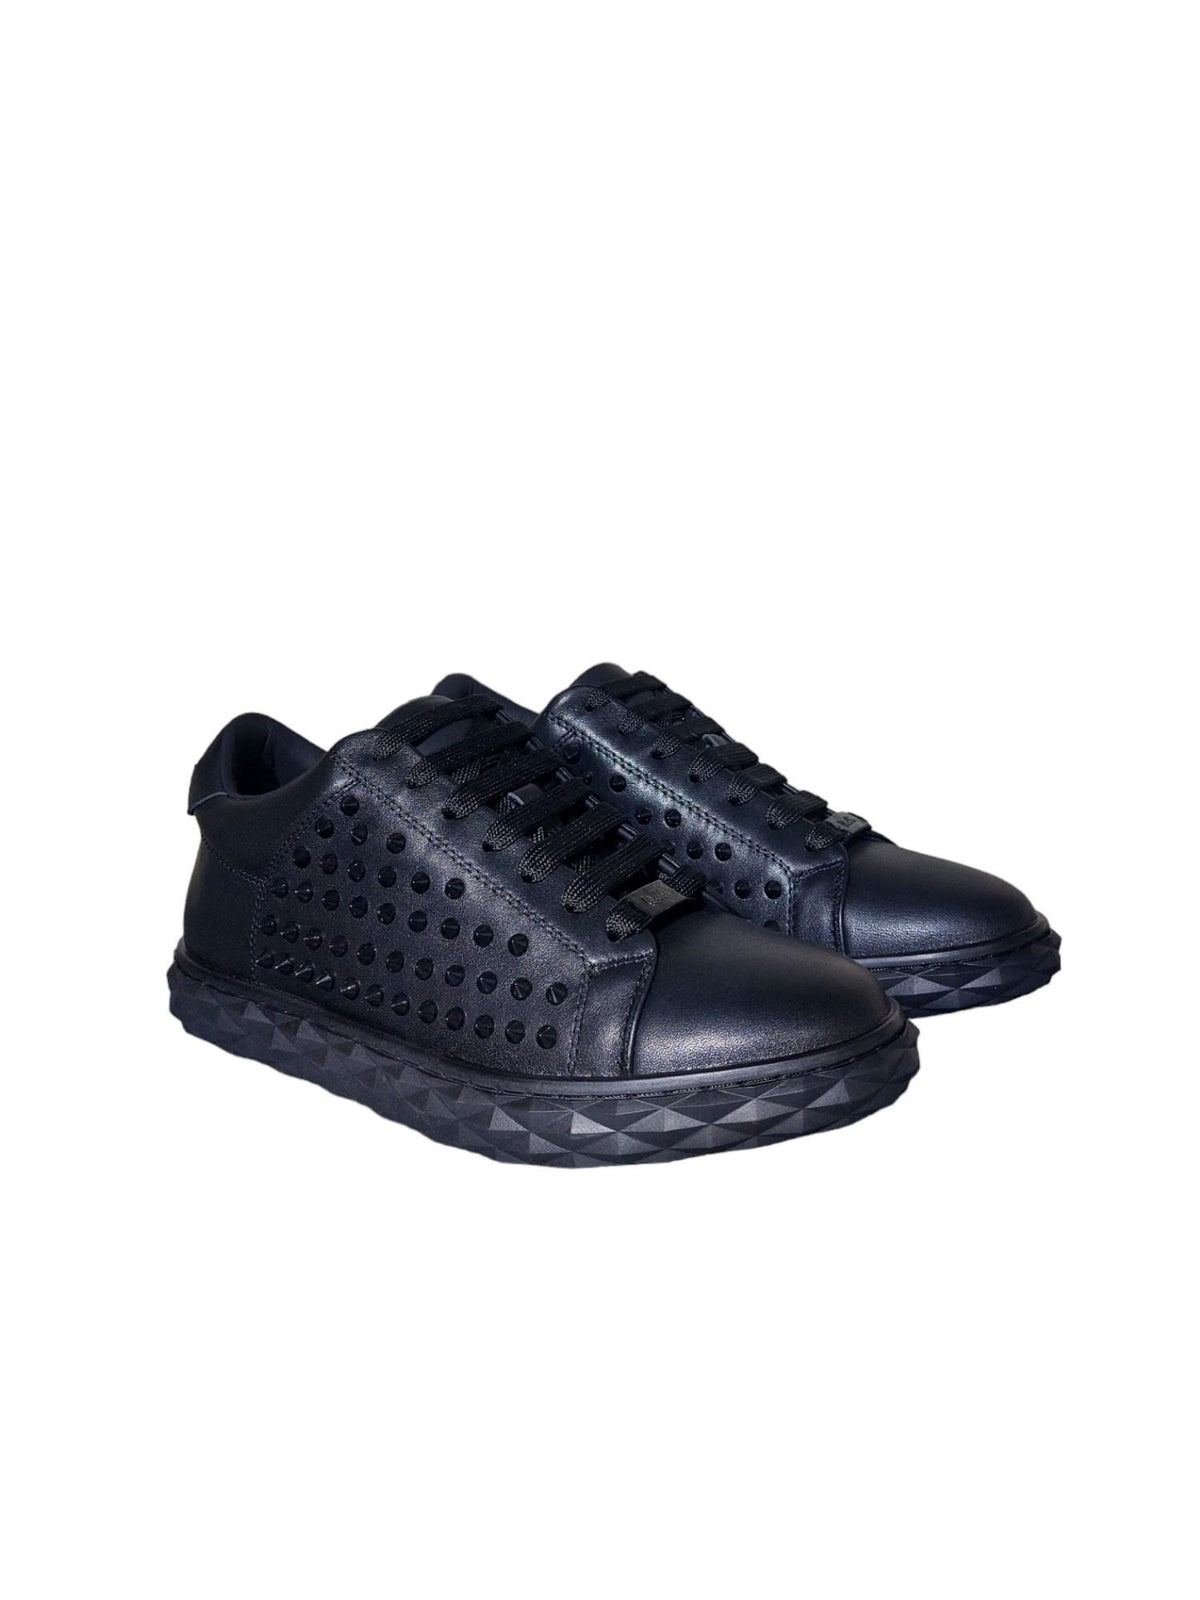 Vialli Vse2301 Vision Shoe Black